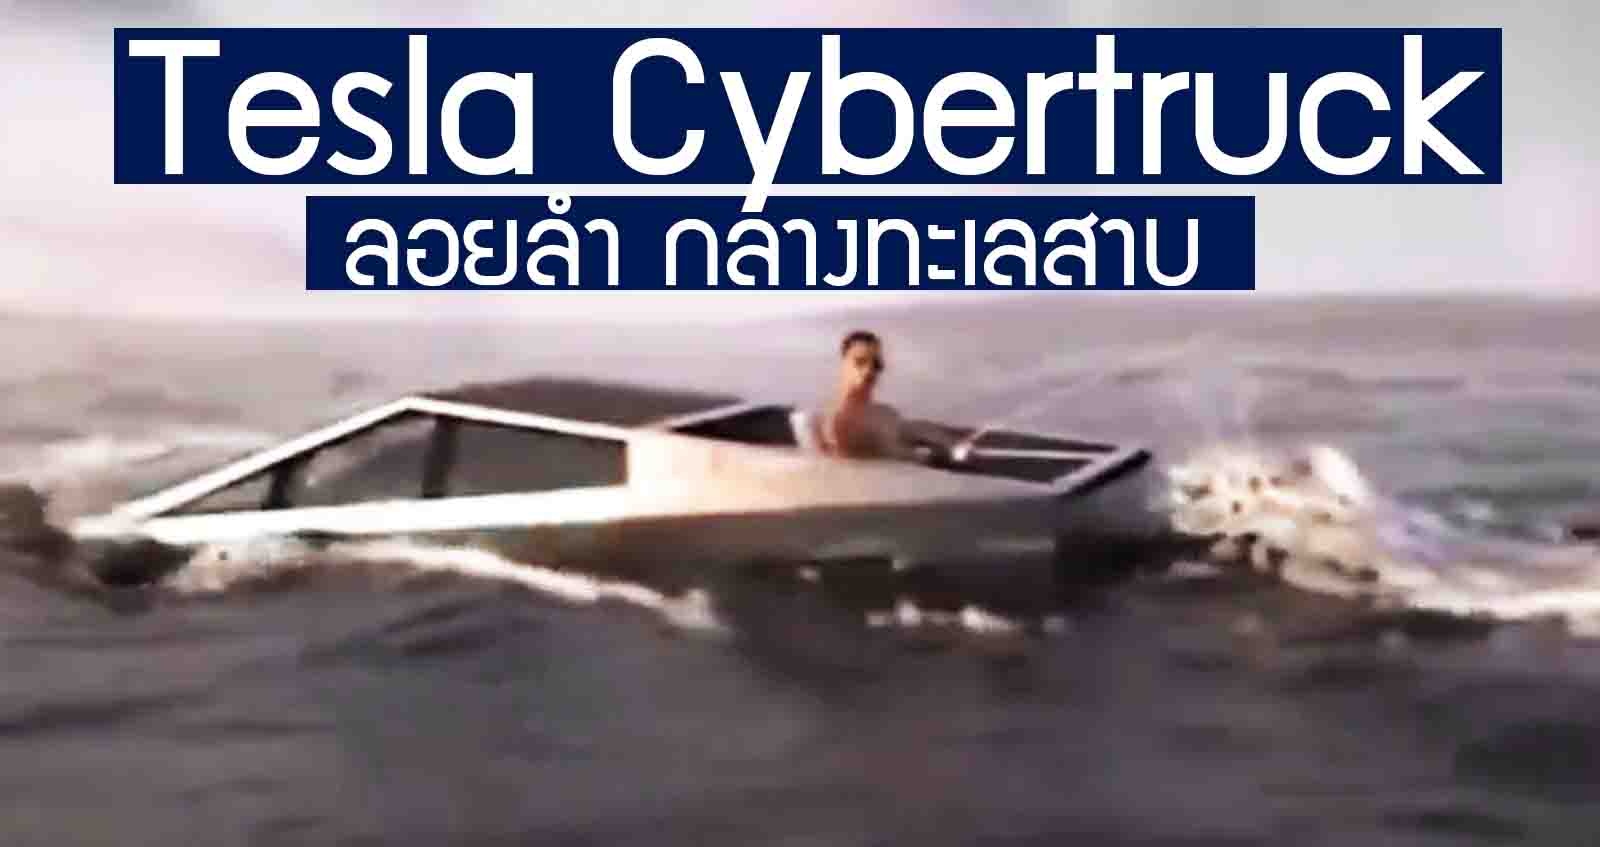 โชว์ Tesla Cybertruck กระบะไฟฟ้า ลอยลำ ในทะเลสาบ (VDO)